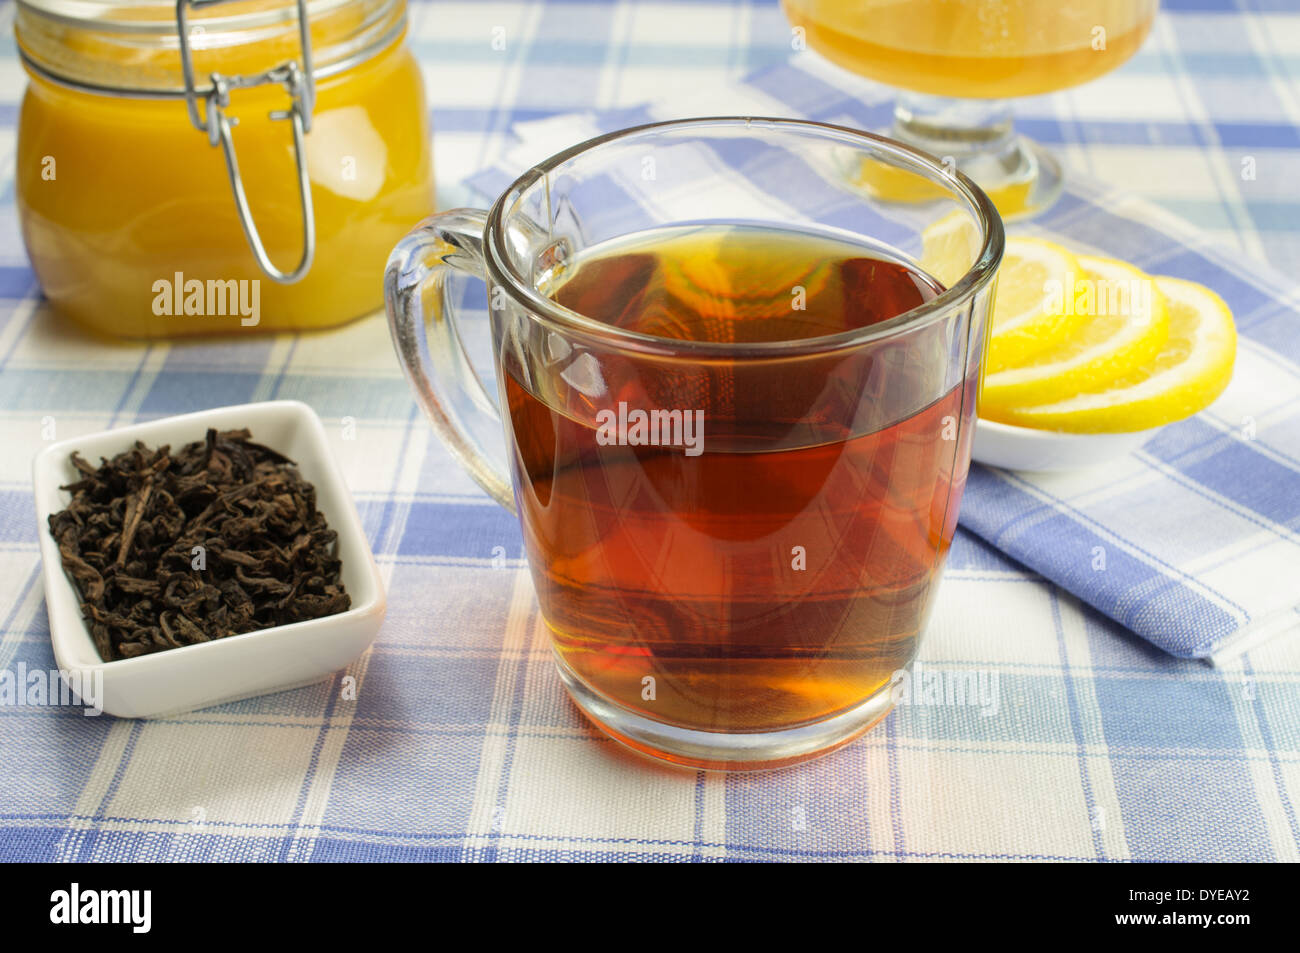 Tazza di tè con un vasetto di miele e le fette di limone sulla tavola. Ciotola con foglie di tè al di fuori. Foto Stock